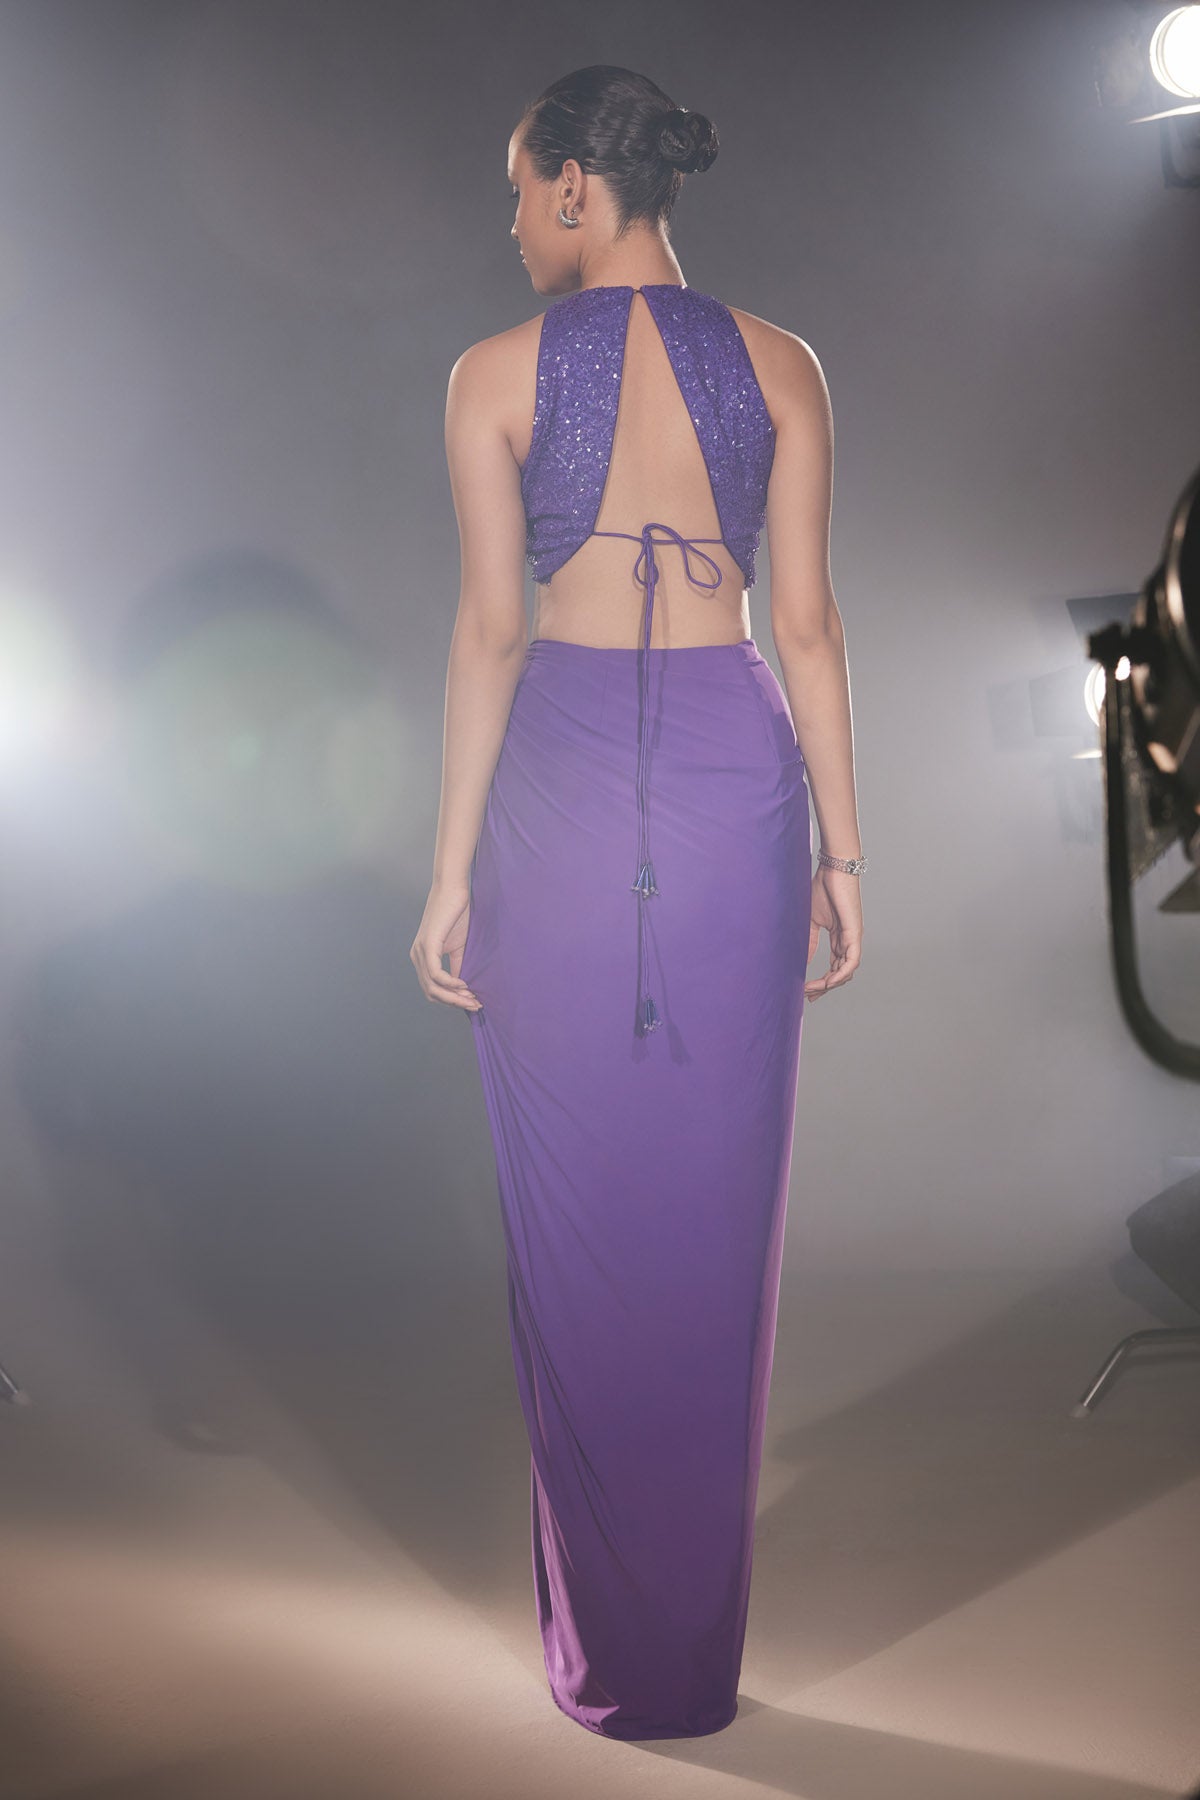 Ultraviolet Sequins Top & Skirt Set